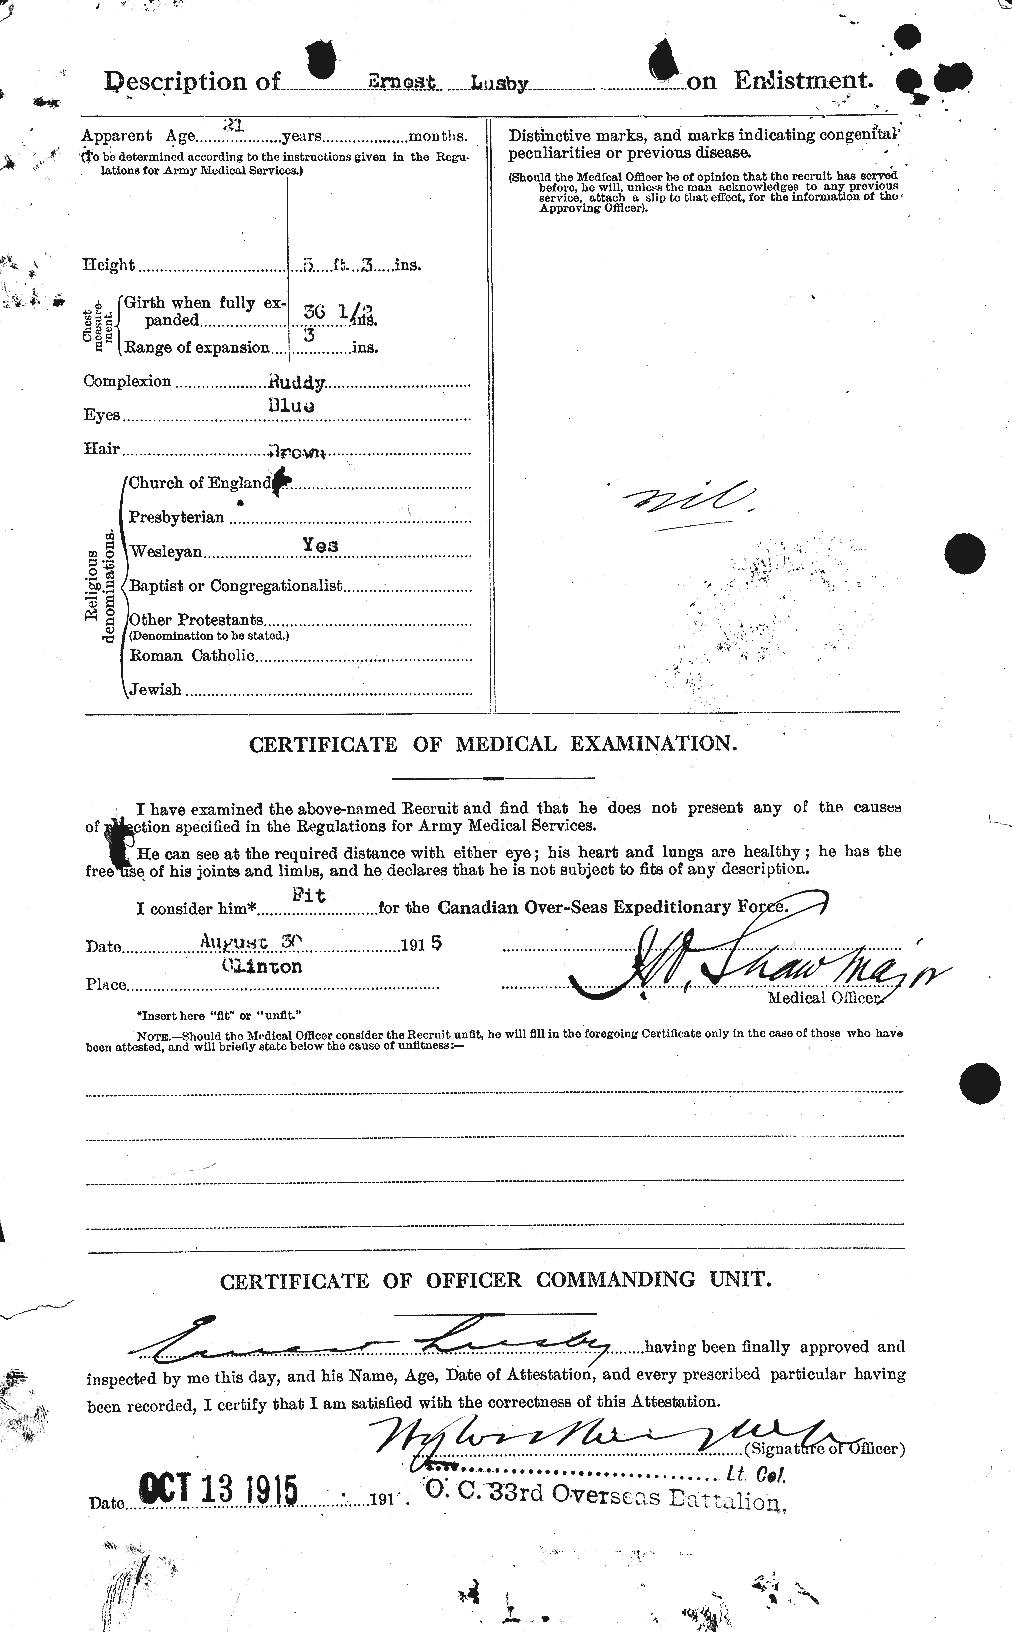 Dossiers du Personnel de la Première Guerre mondiale - CEC 475732b